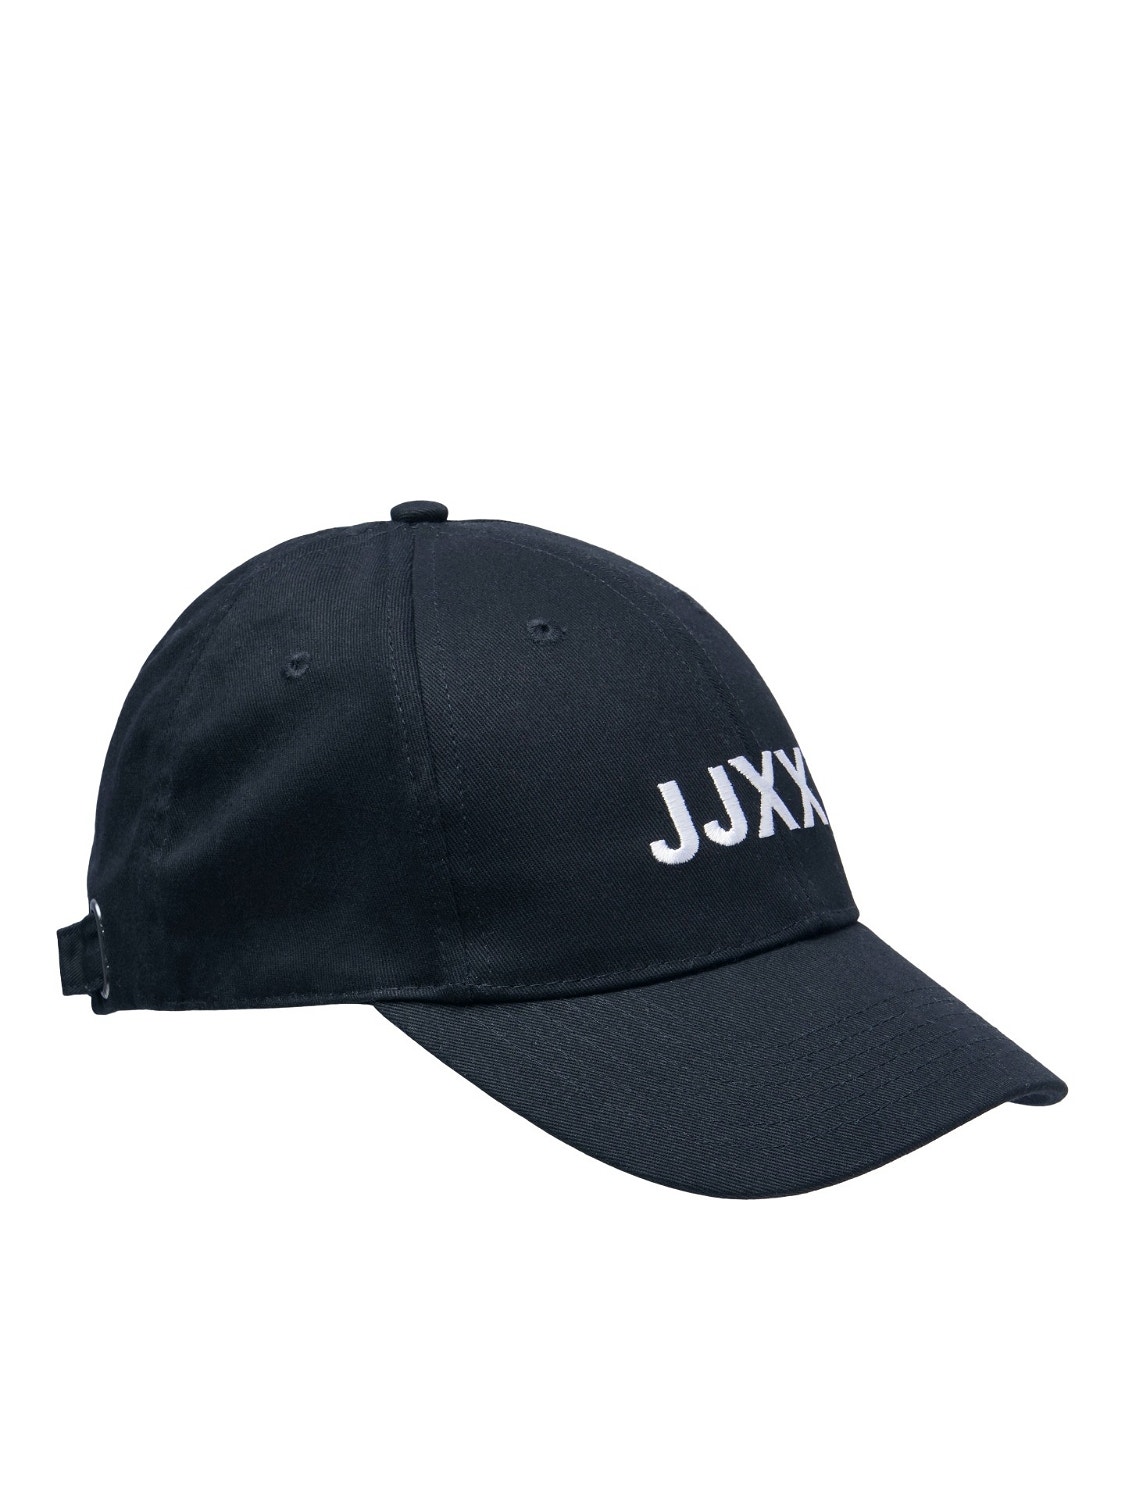 JJXX JXBASIC Cappellino baseball -Navy Blazer - 12203698